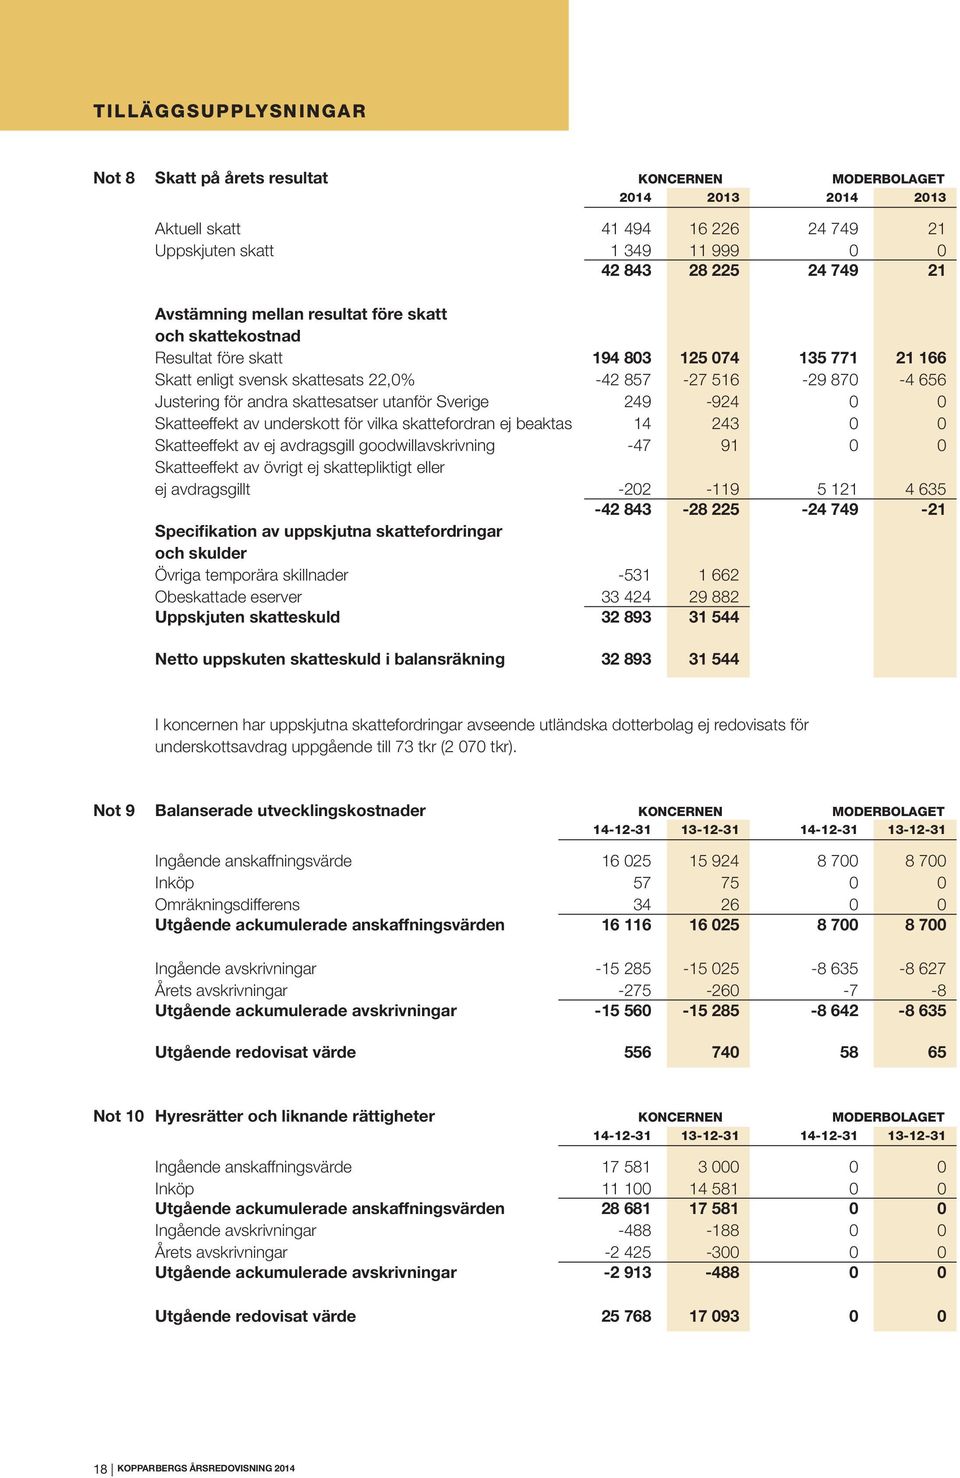 skattesatser utanför Sverige 249-924 0 0 Skatteeffekt av underskott för vilka skattefordran ej beaktas 14 243 0 0 Skatteeffekt av ej avdragsgill goodwillavskrivning -47 91 0 0 Skatteeffekt av övrigt